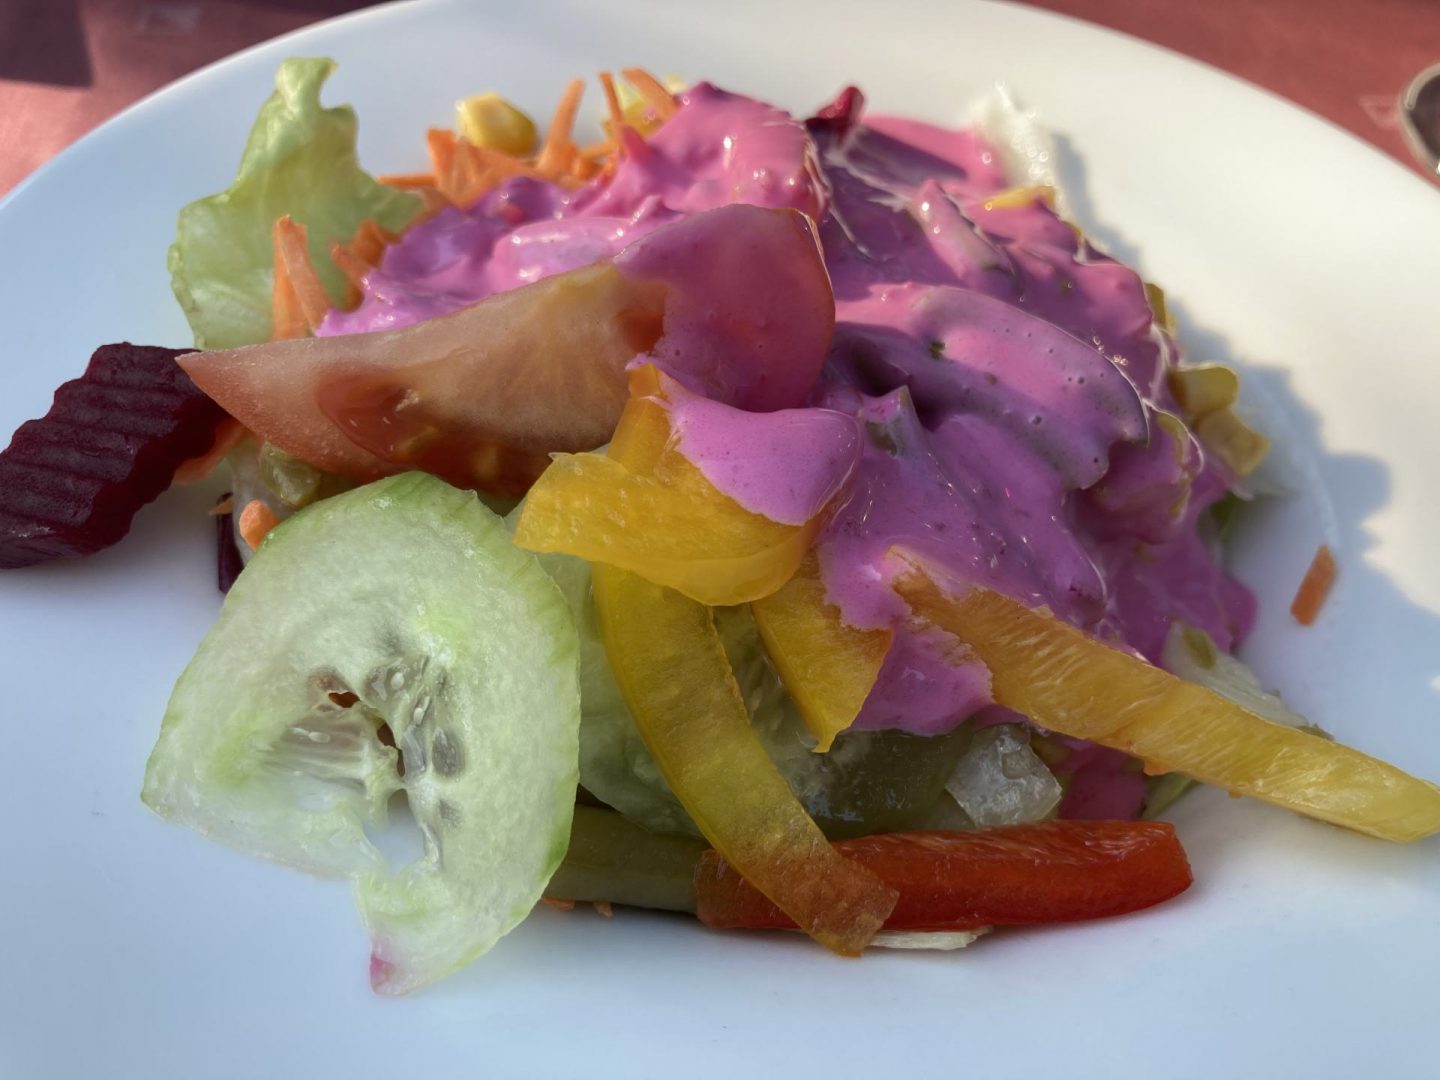 Erfahrung Bewertung Kritik El Cadoro Steakhaus Salat Foodblog Sternestulle